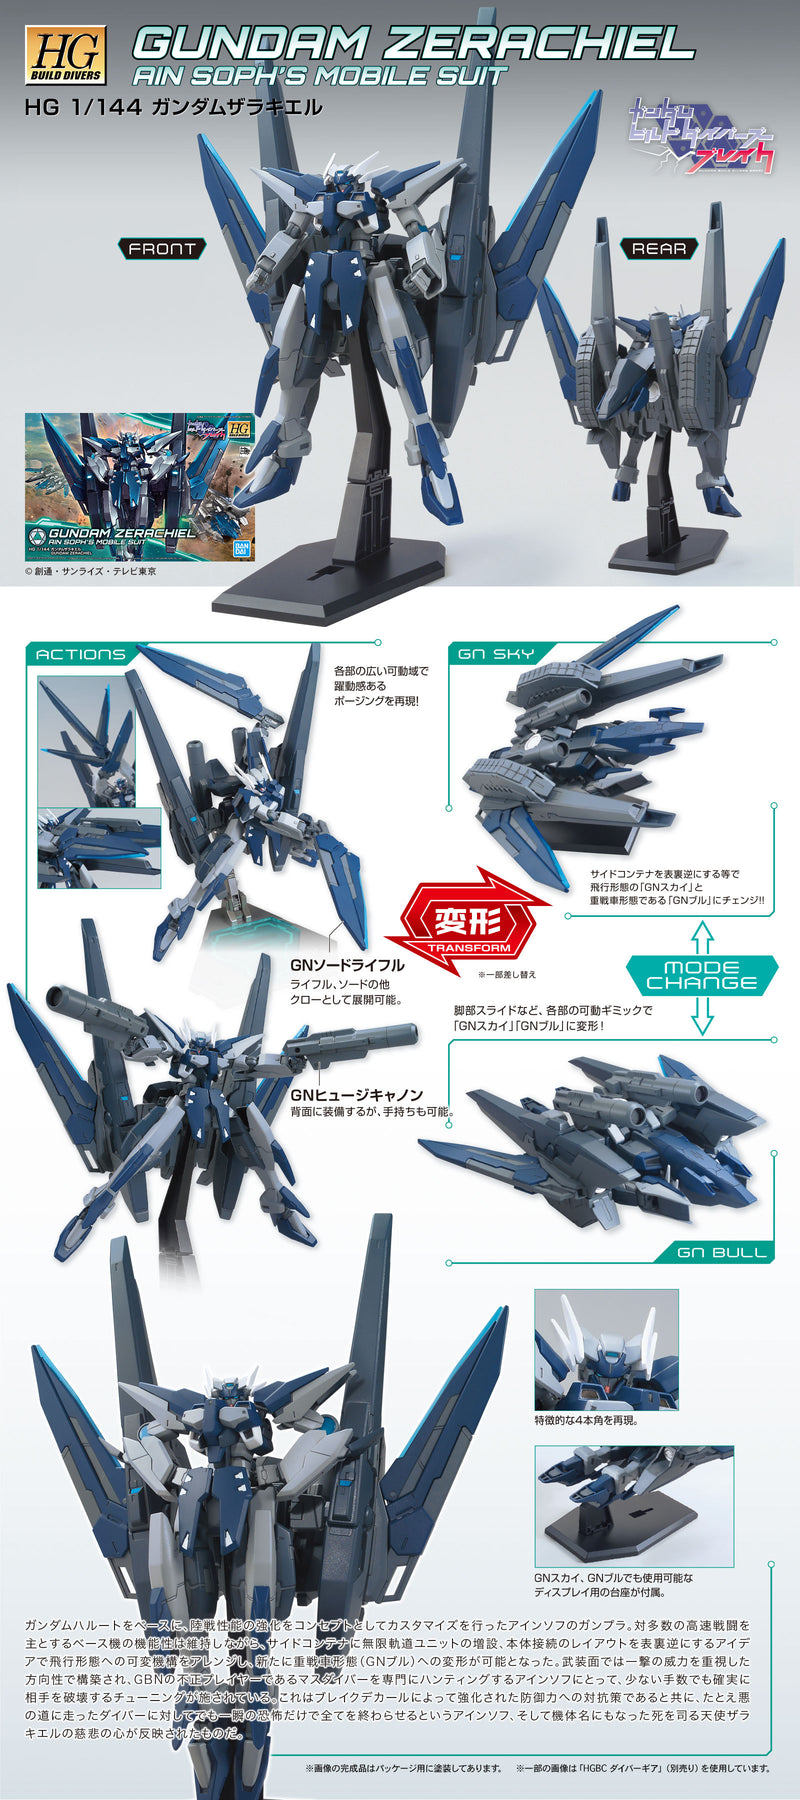 HG Gundam Zerachiel 1/144